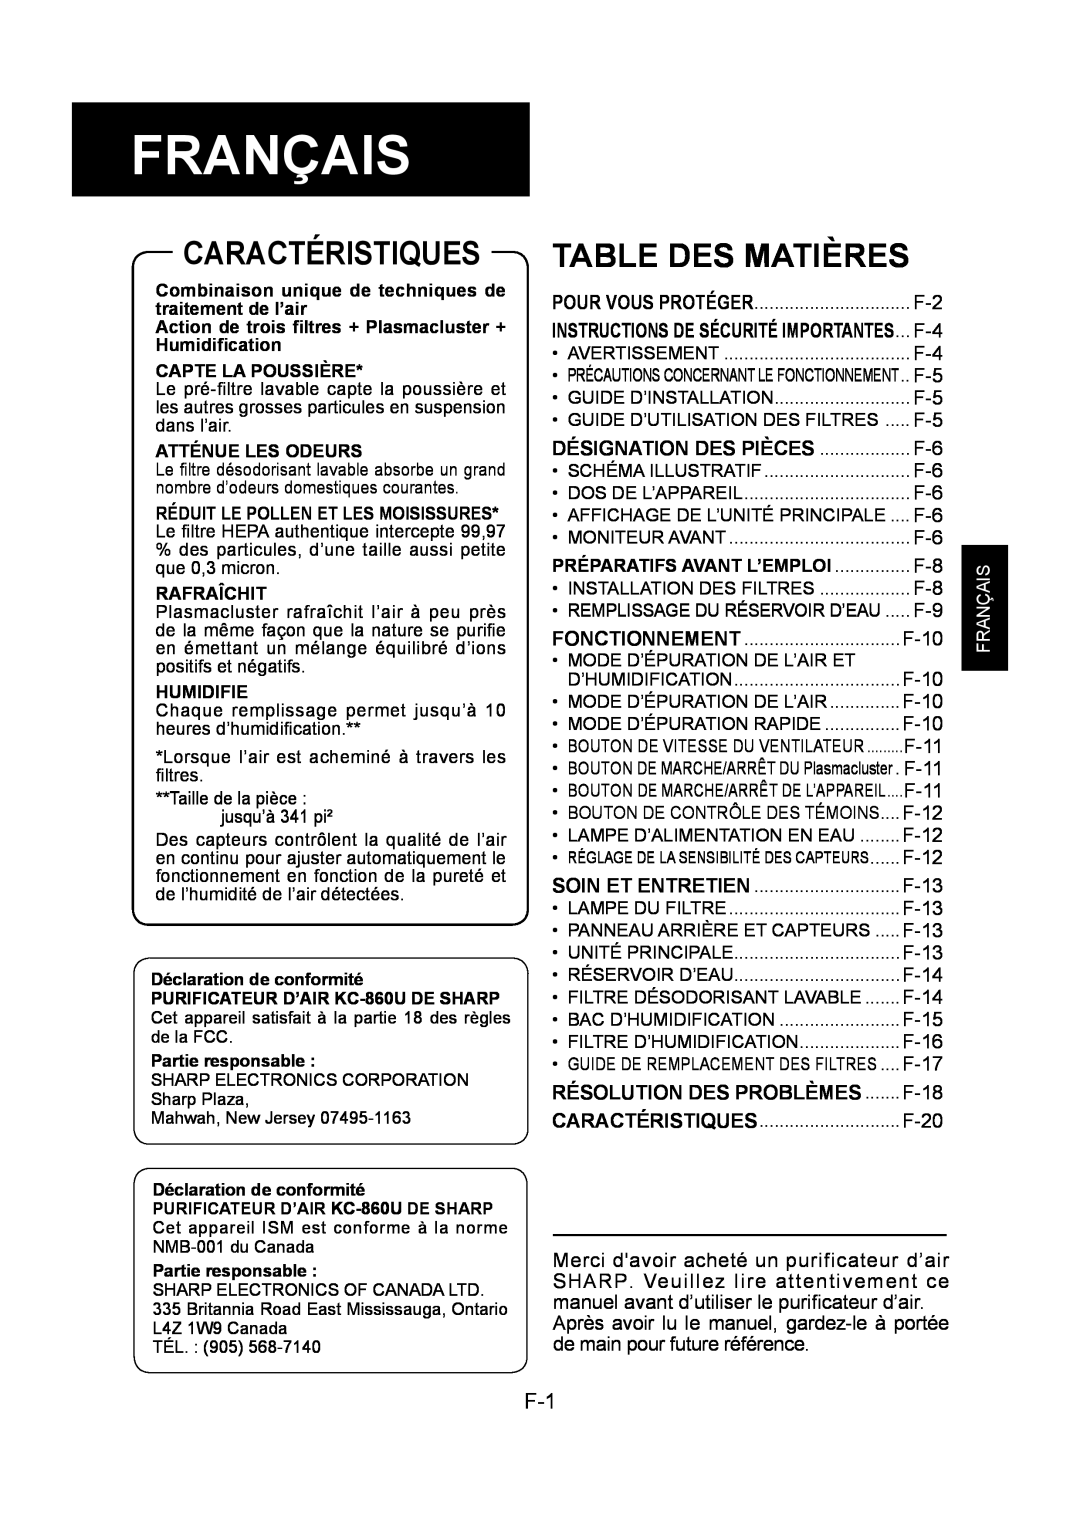 Sharp KC-860U operation manual Français, Caractéristiques, Table Des Matières 